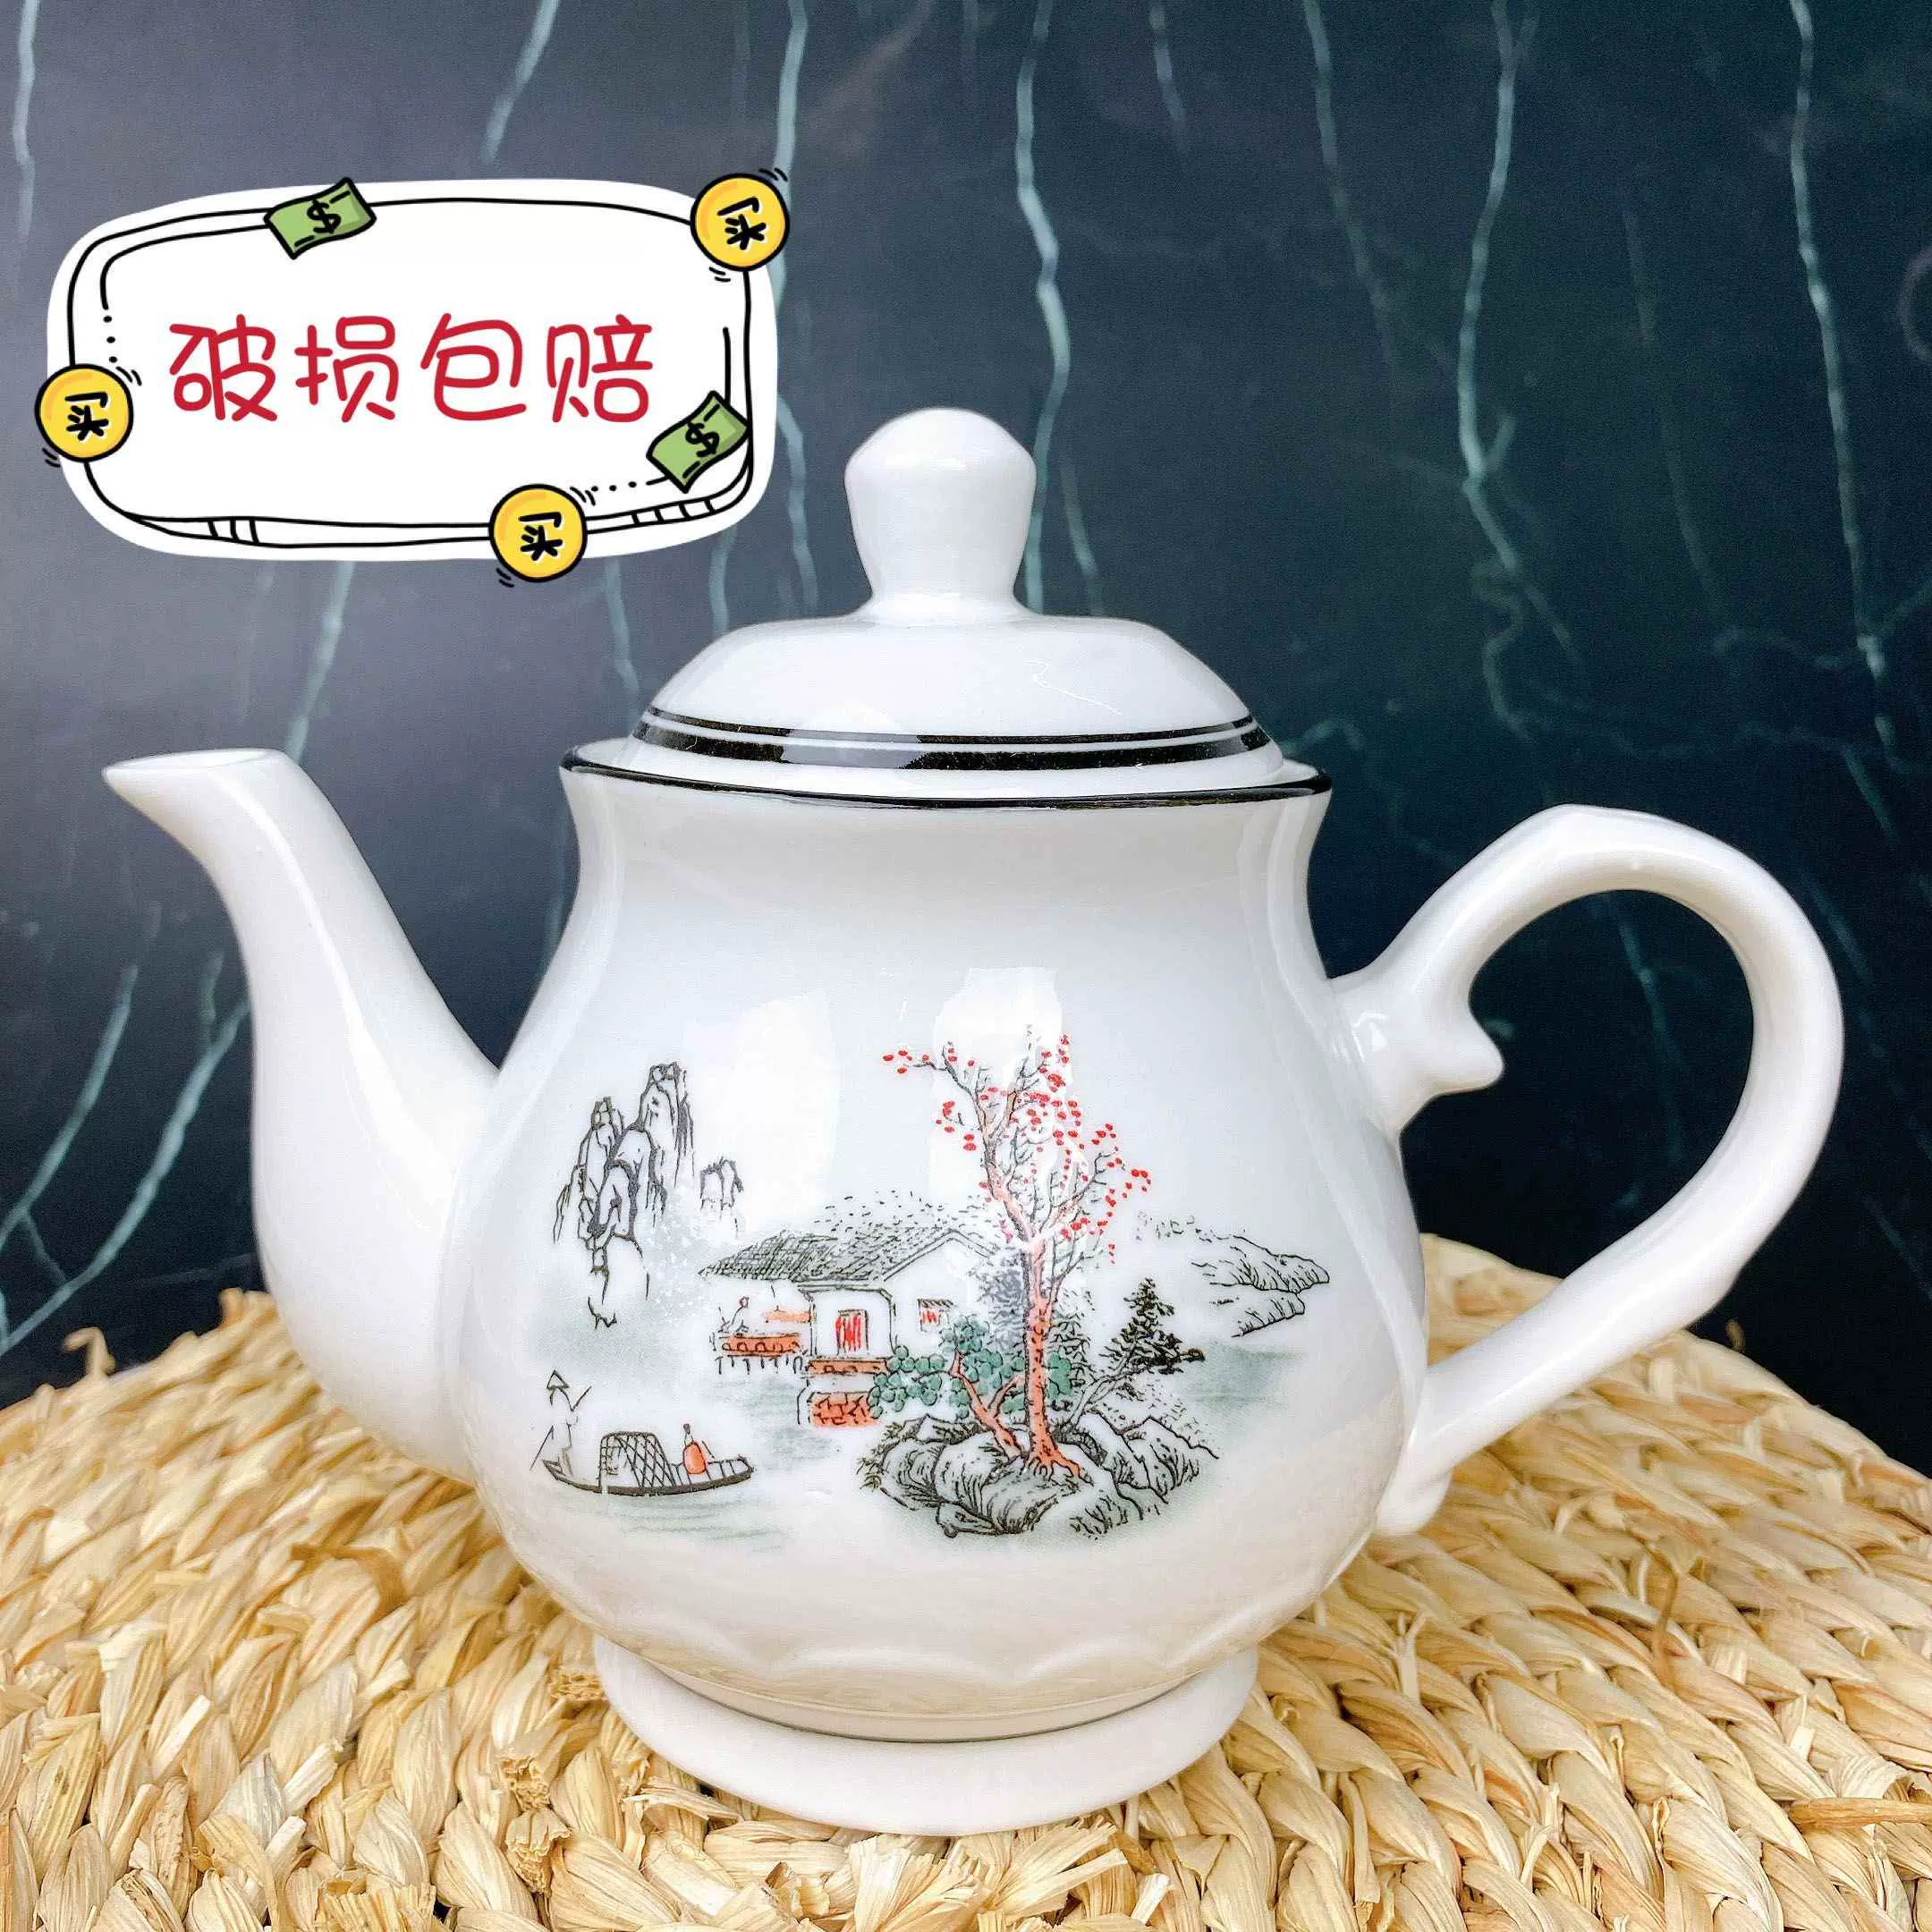 大茶壶老式农村陶瓷泡茶家用中国风夏天家庭大号过滤壶耐热茶水壶-Taobao